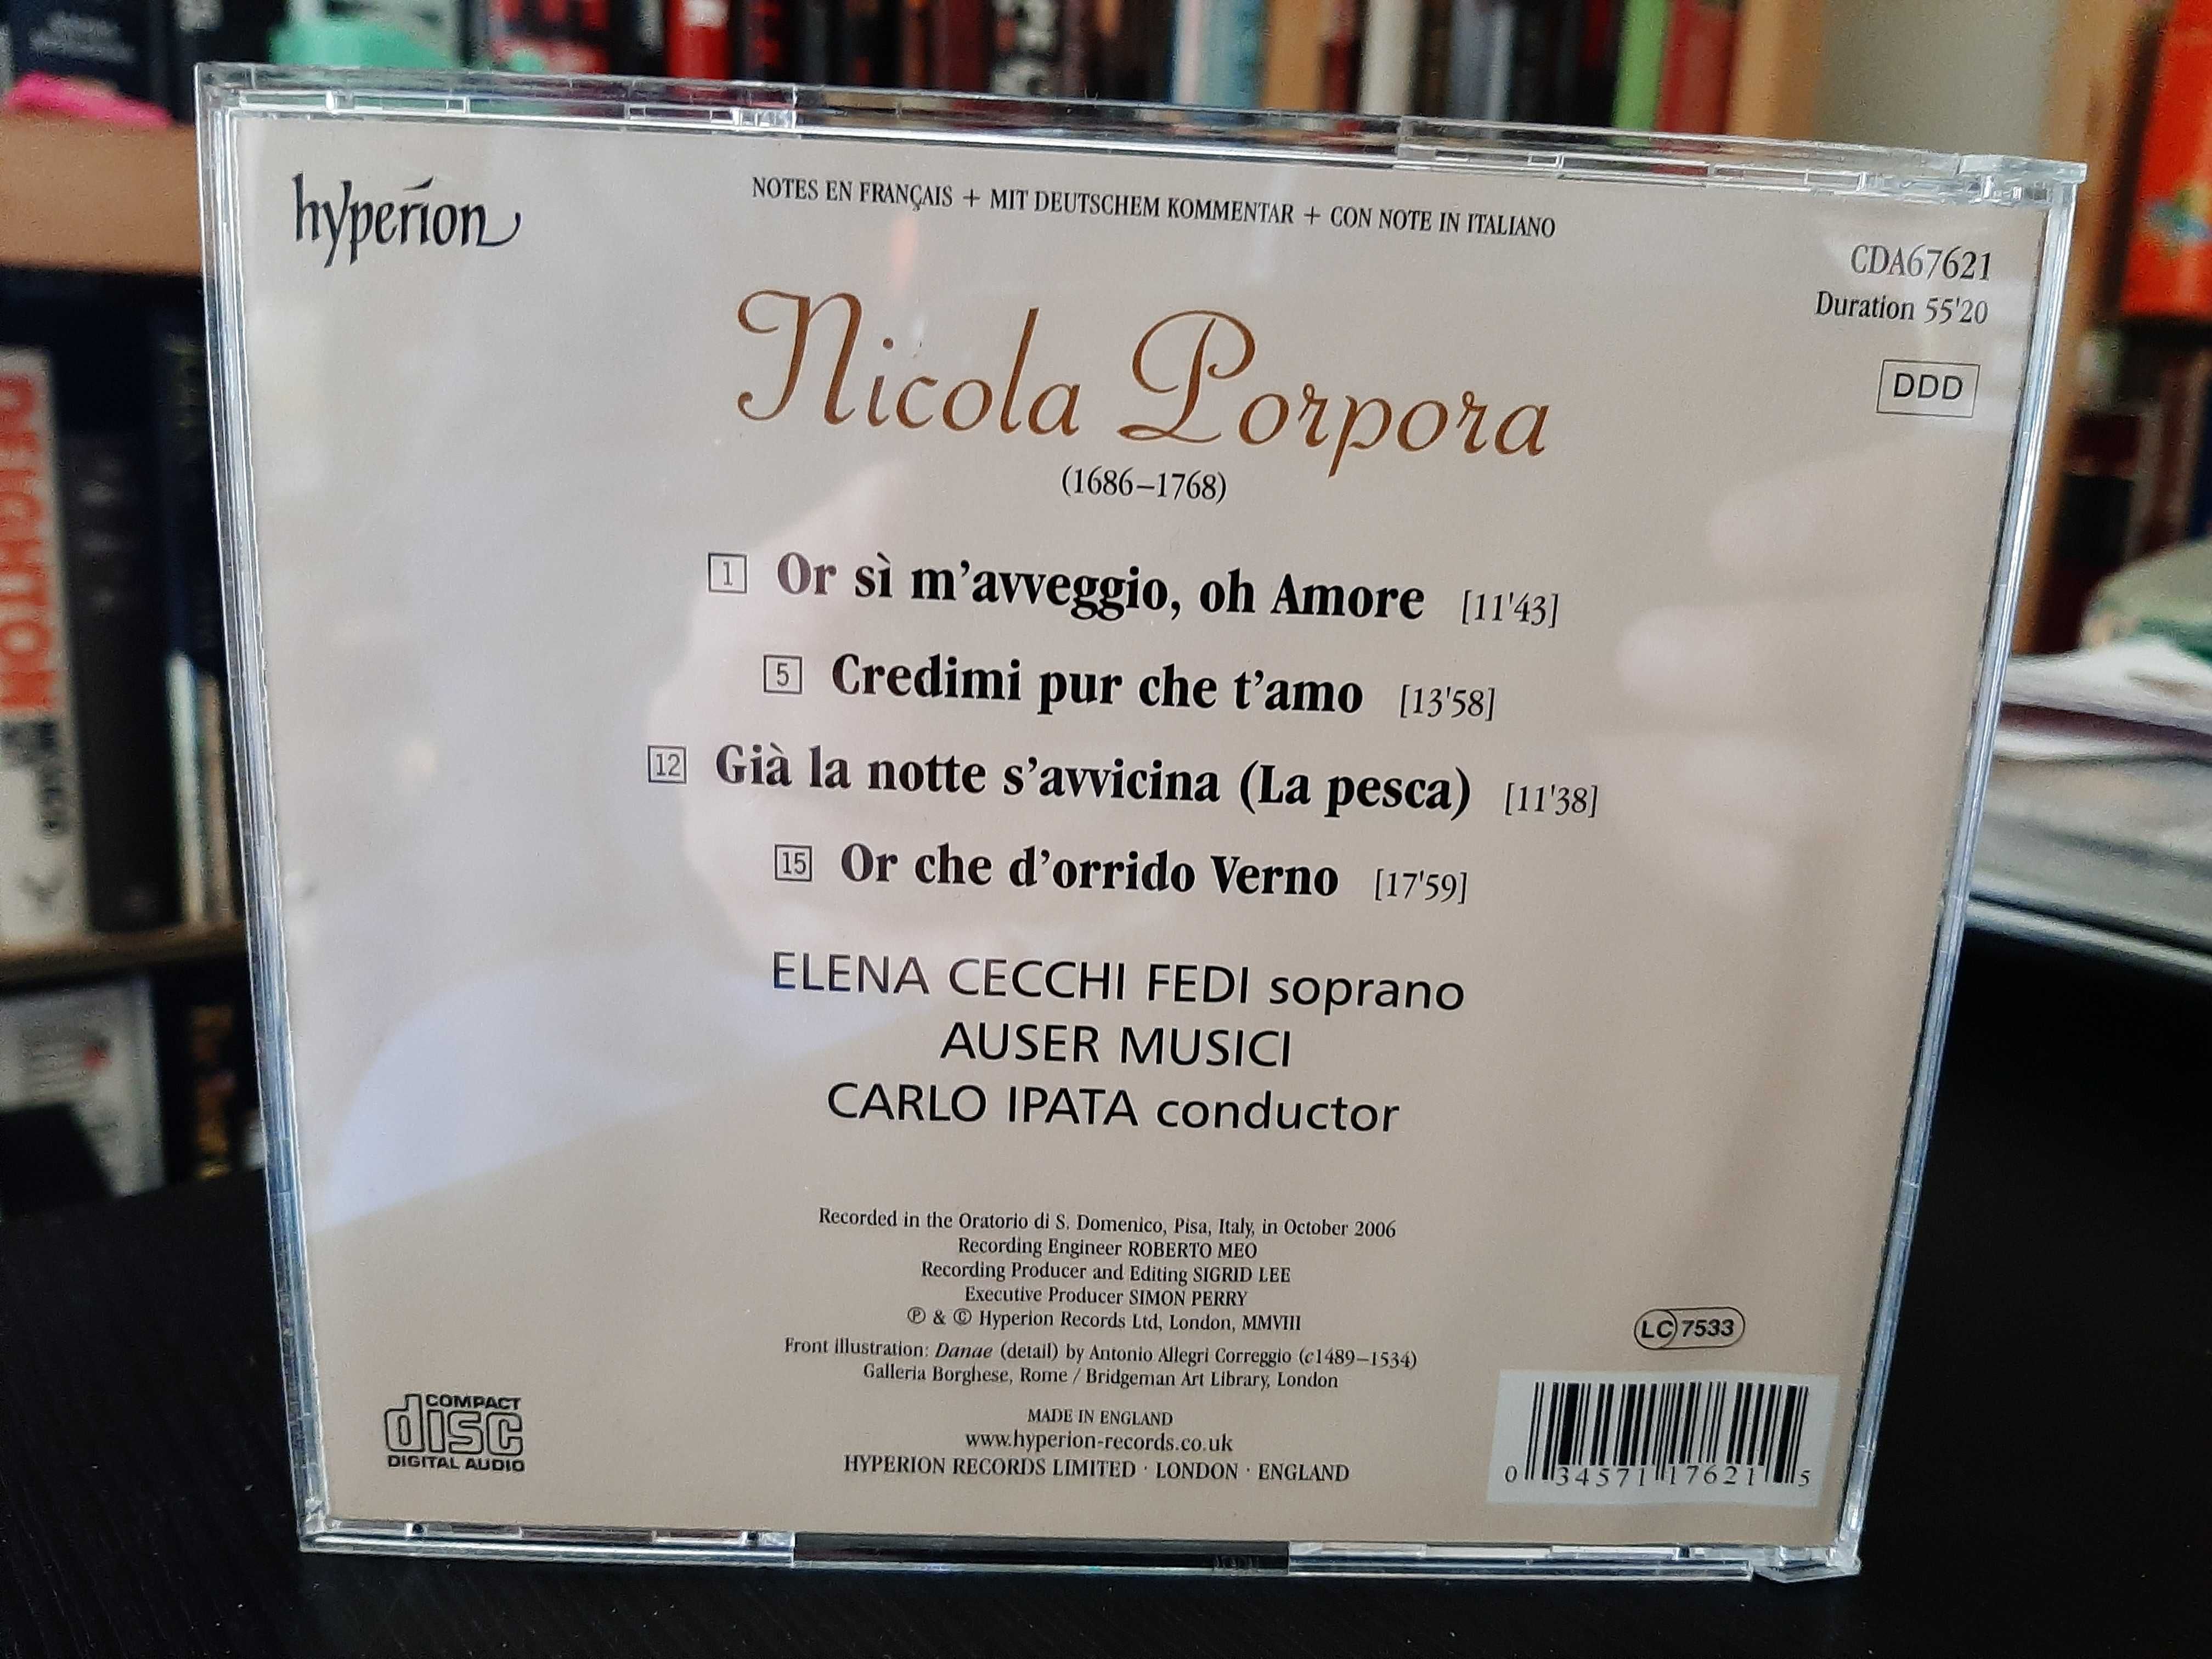 Porpora – Cantatas for soprano – Auser Musici, Carlo Ipata